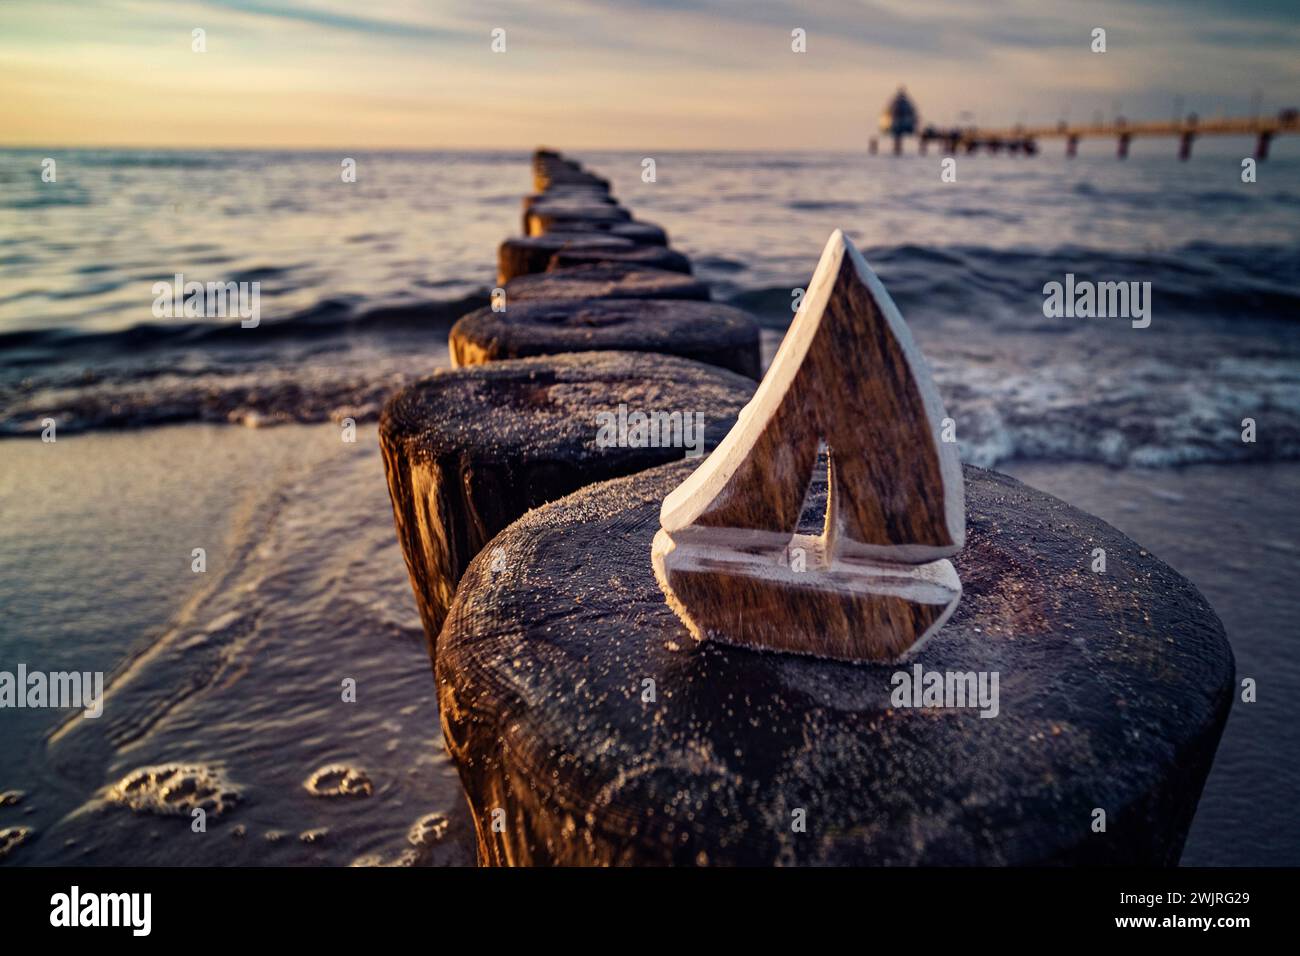 Wooden sailboat model on coastal breakwater at sunset, symbolizing travel and exploration. Stock Photo